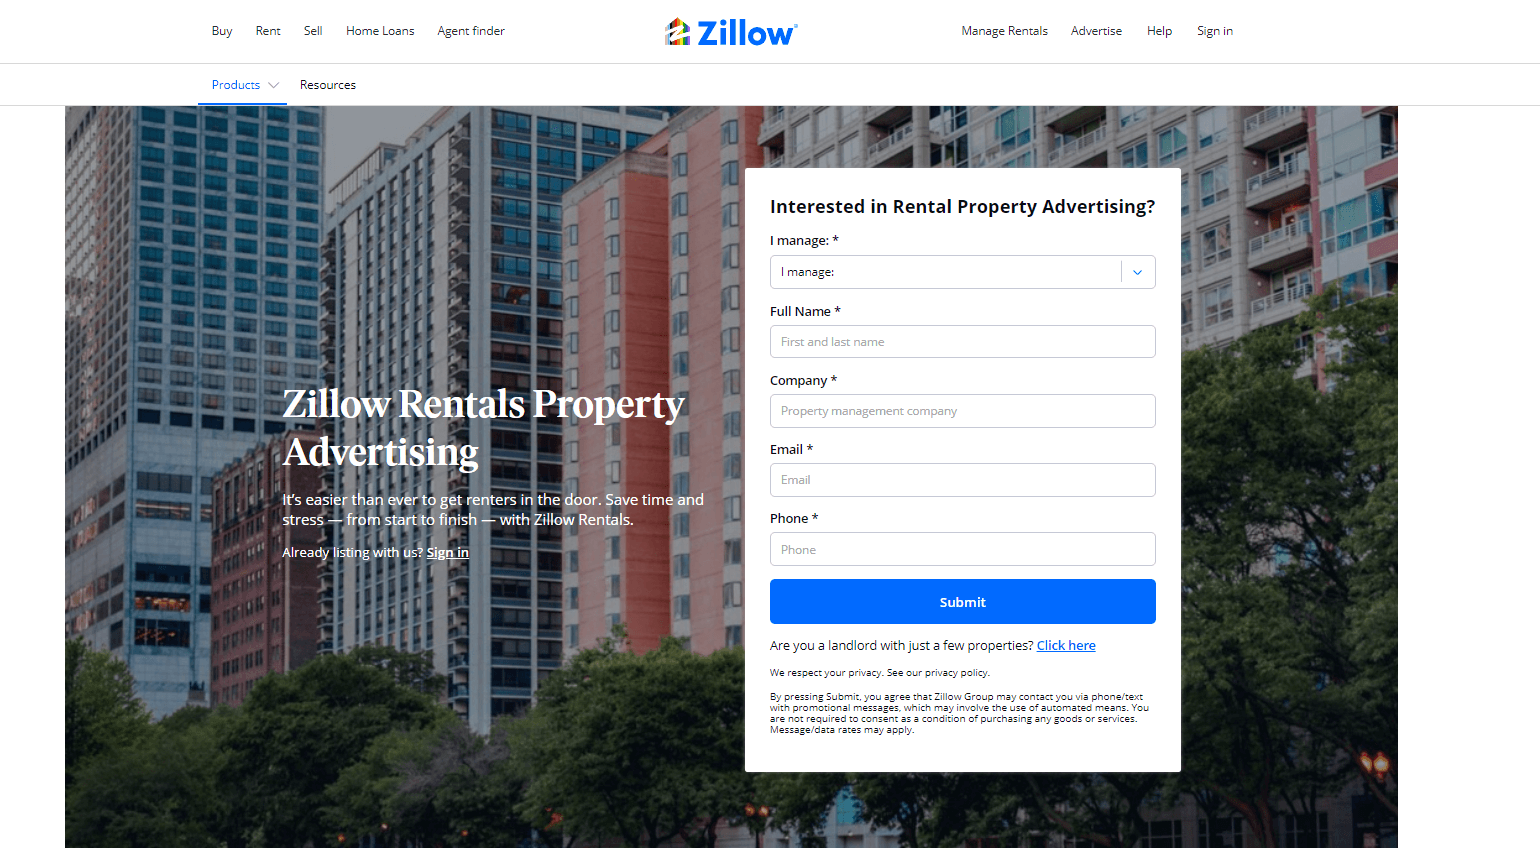 Zillow Rentals Property Advertising platform